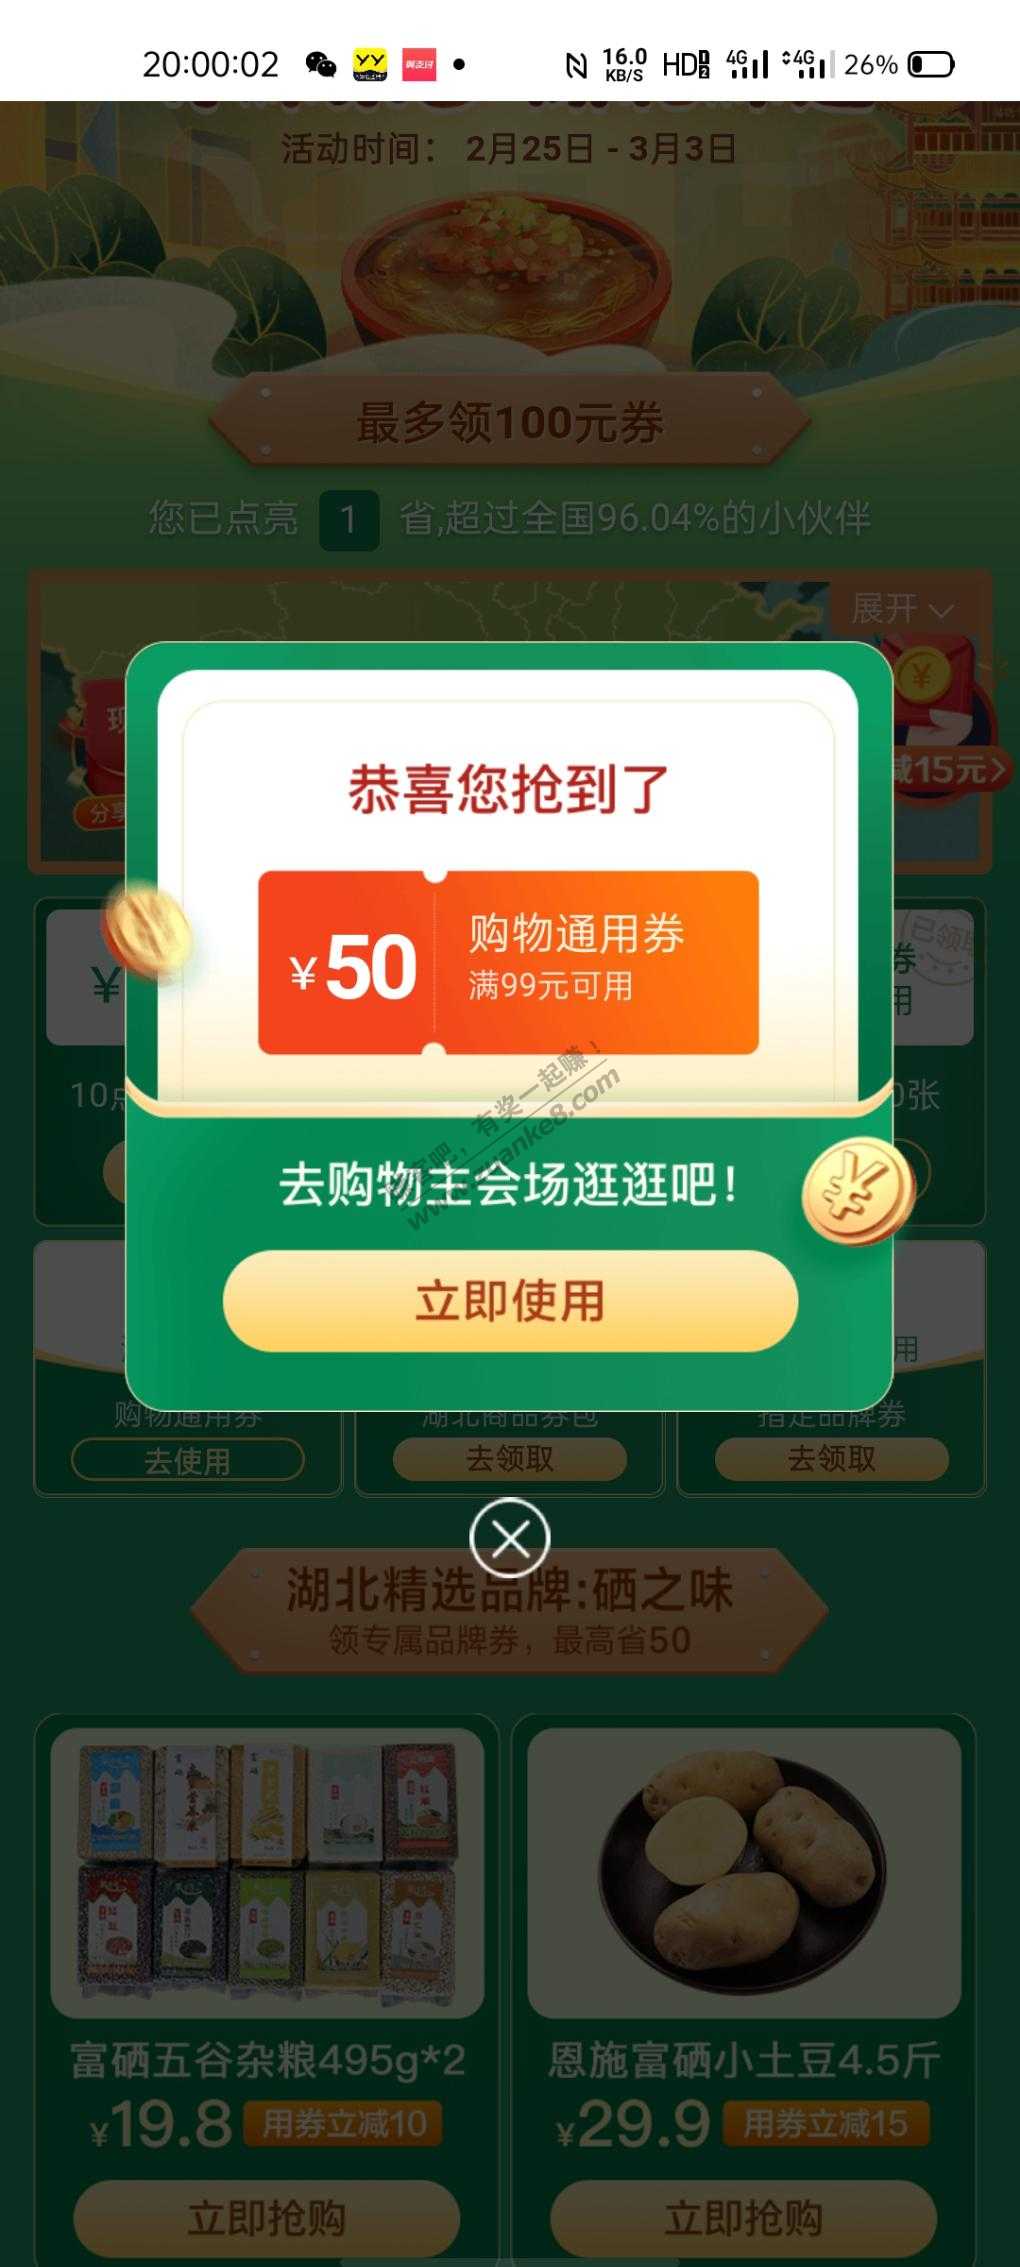 今天翼支付99-50好抢-惠小助(52huixz.com)